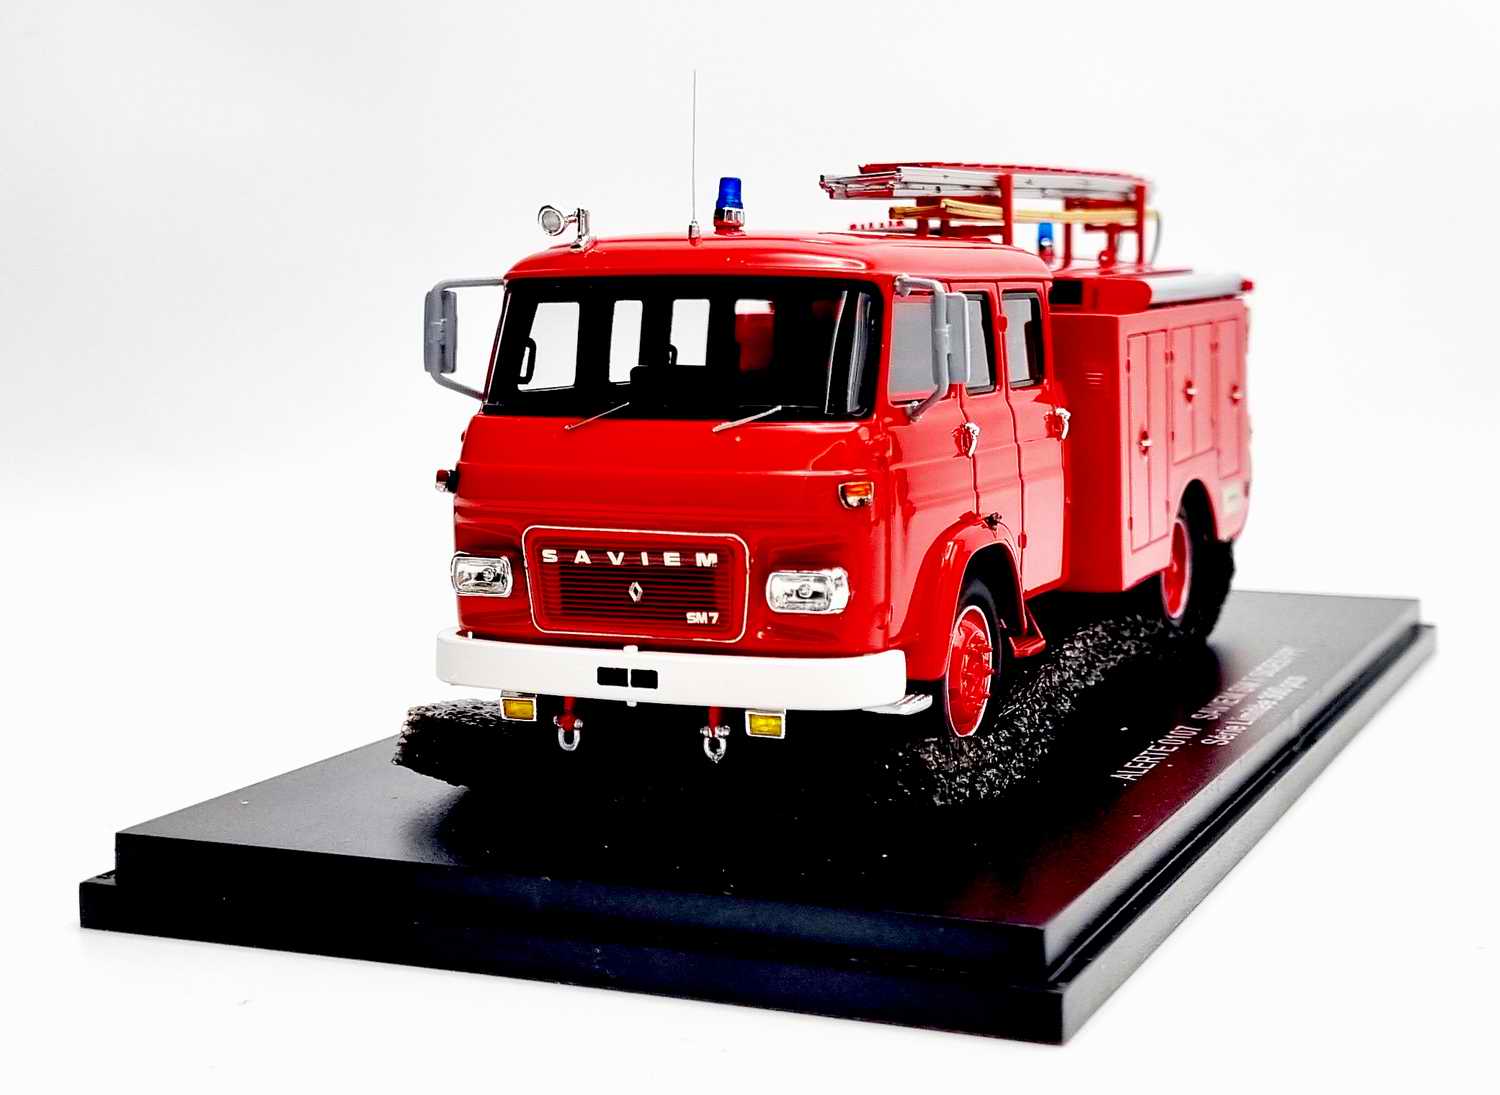 Camion de Sapeurs Pompiers SAVIEM SM7 SIDES FPT 1975 1/43 Véhicule de  Collection